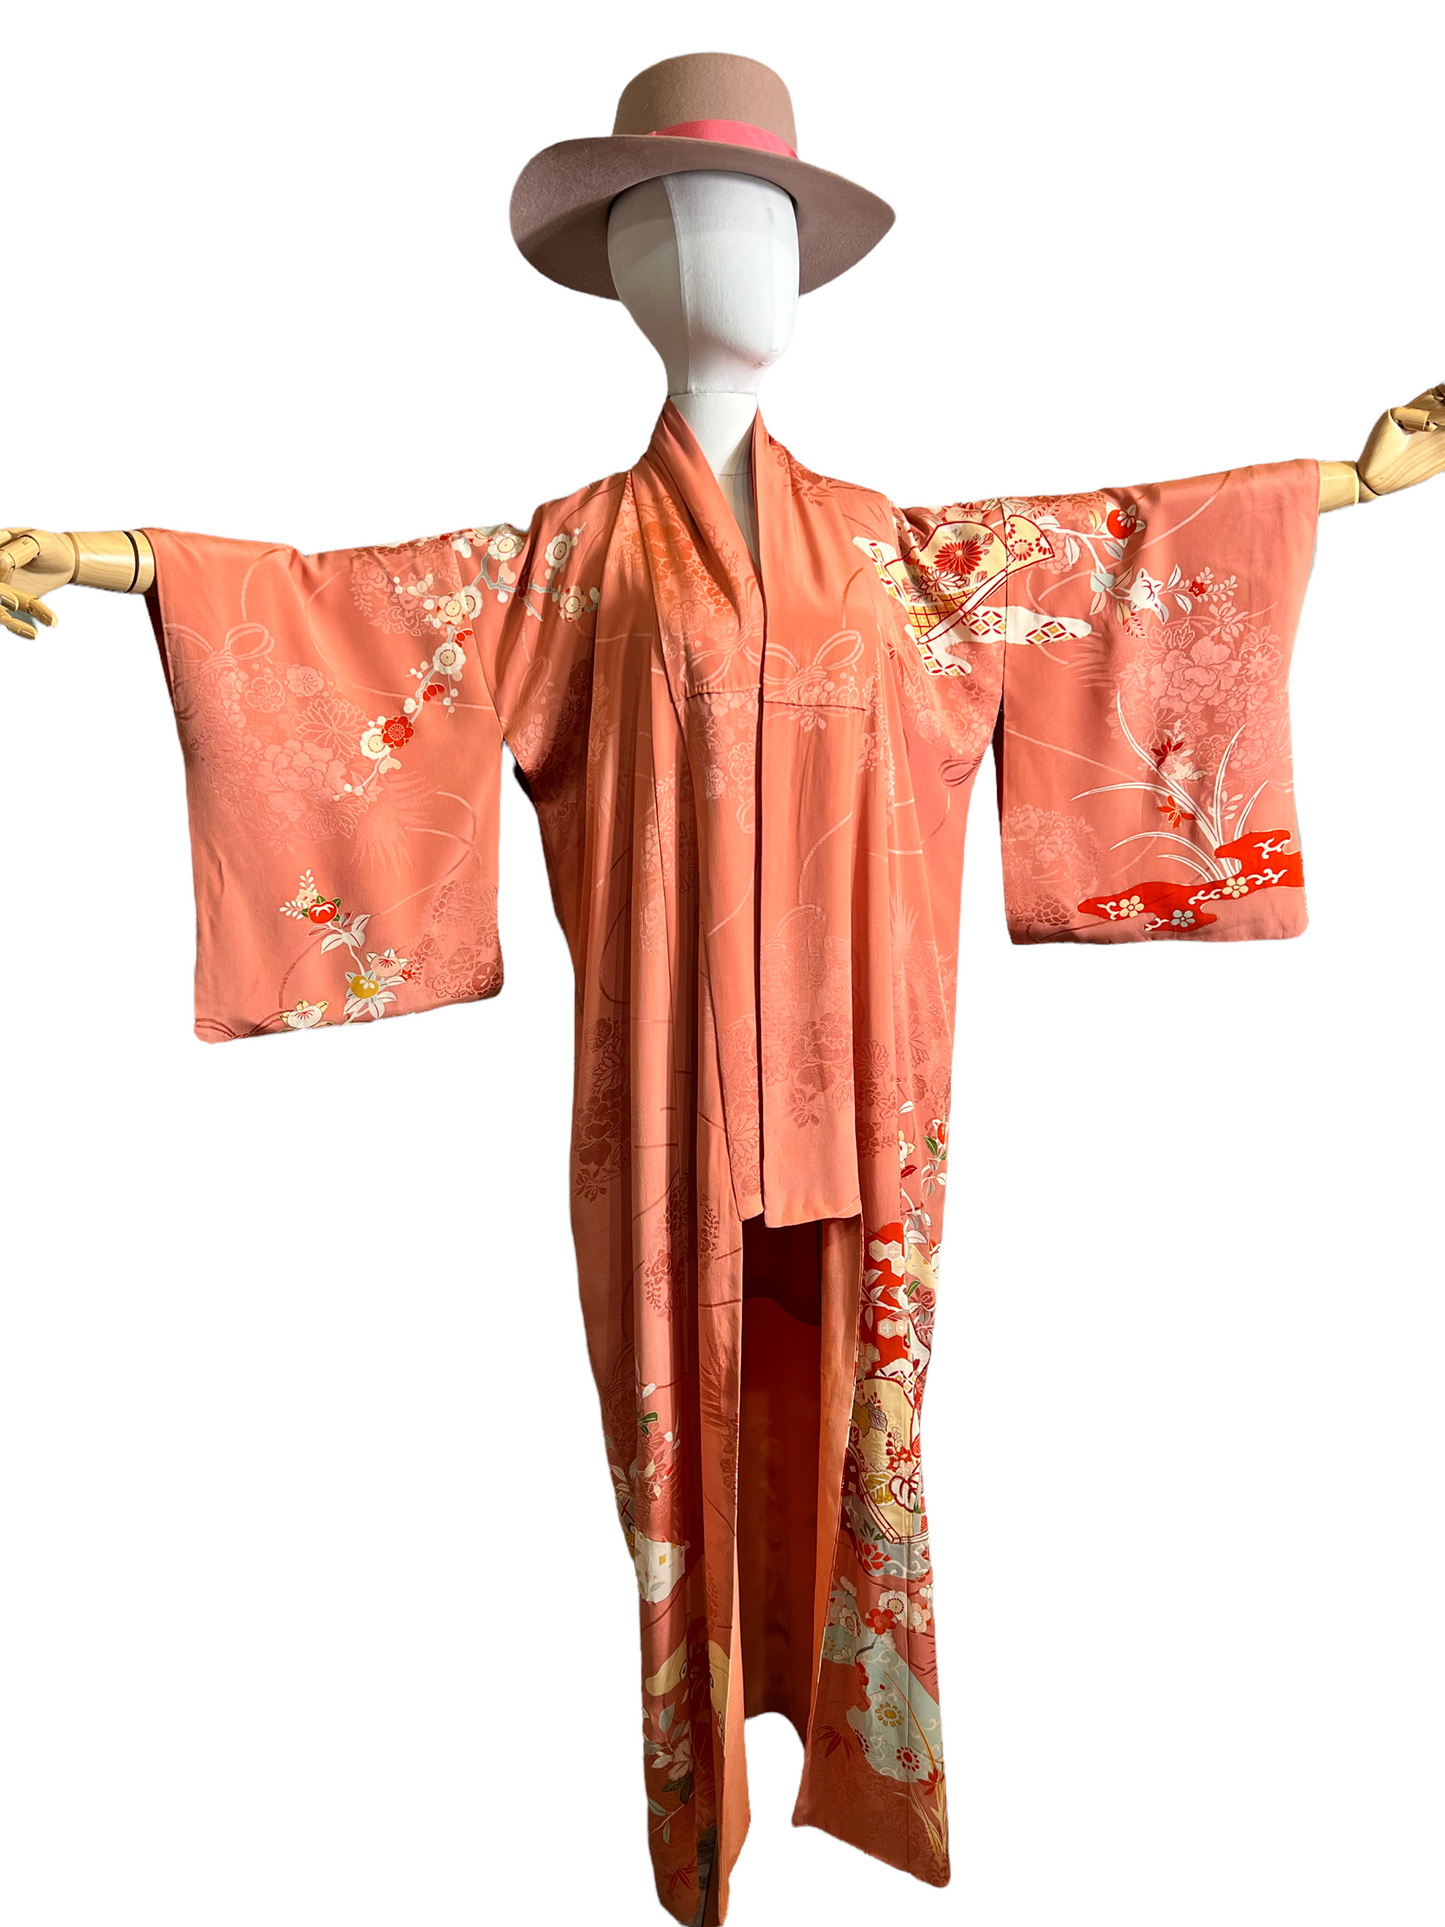 Antique Ladys Ceremony kimono